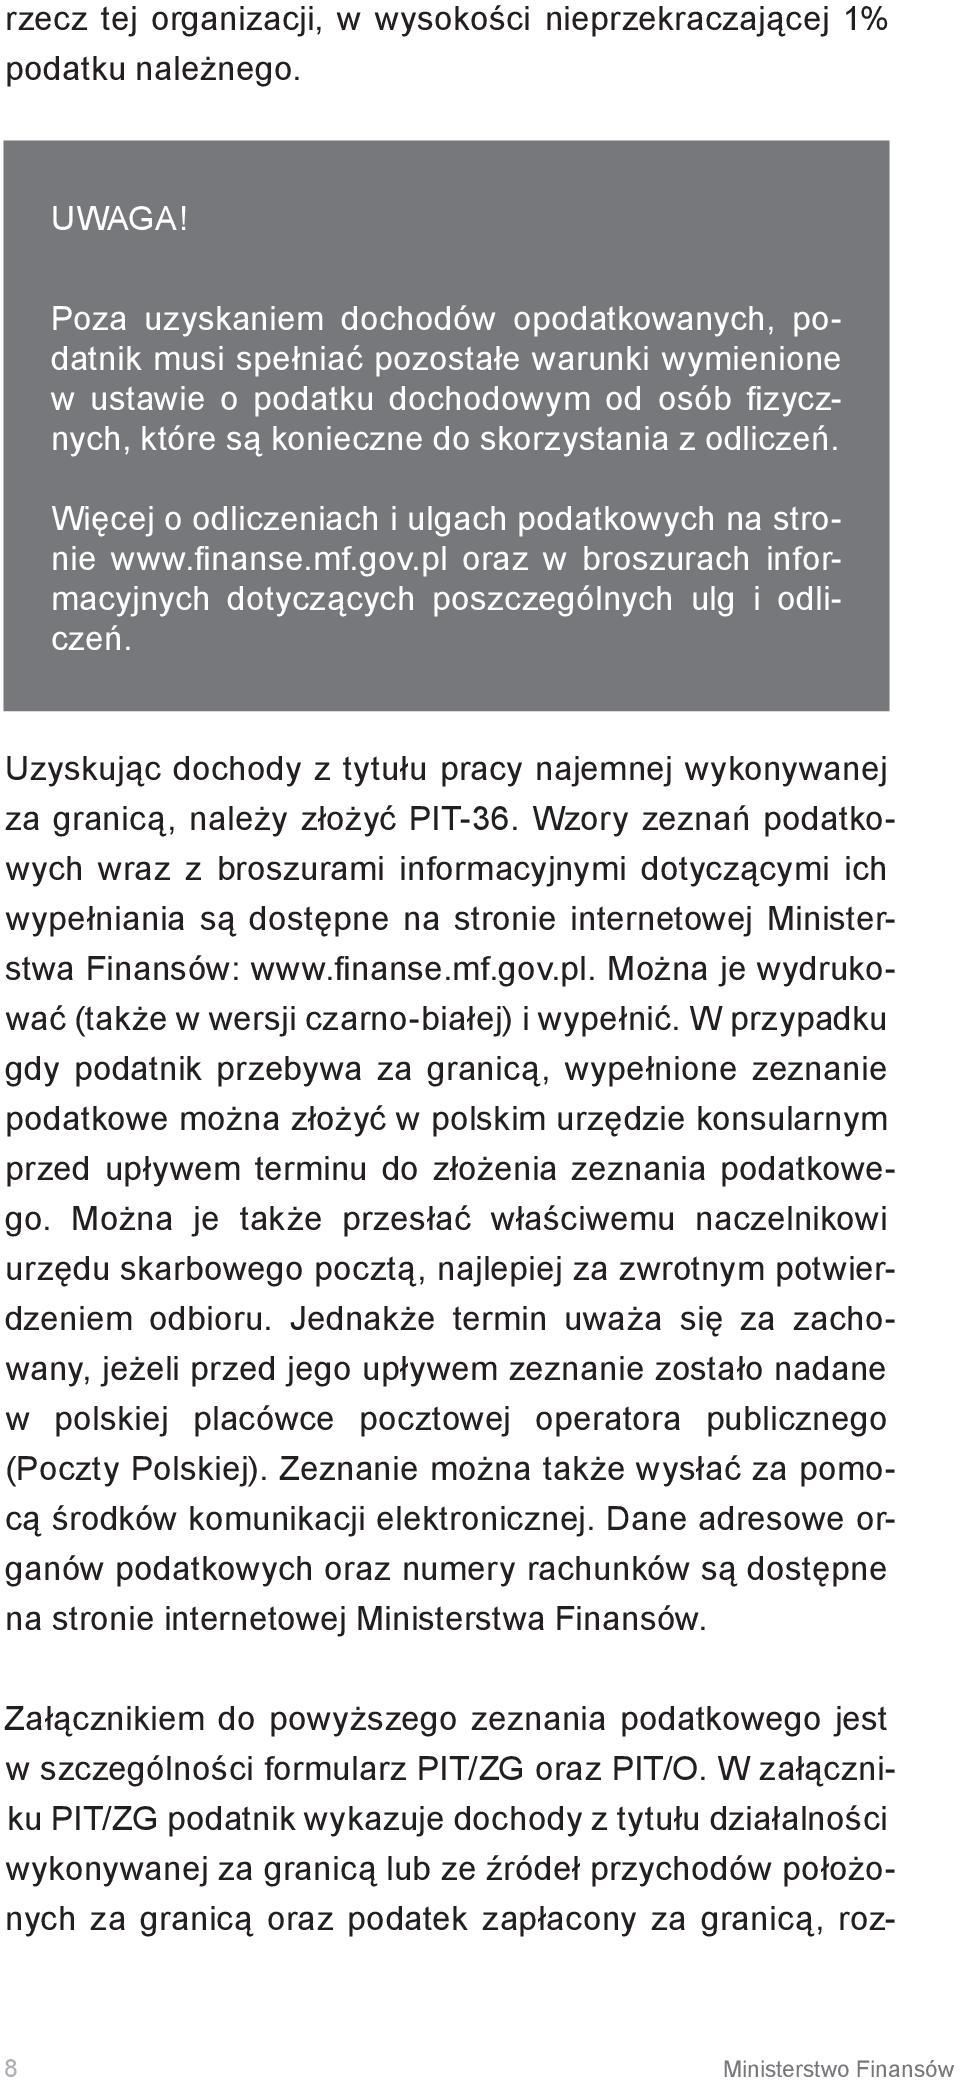 Więcej o odliczeniach i ulgach podatkowych na stronie www.finanse.mf.gov.pl oraz w broszurach informacyjnych dotyczących poszczególnych ulg i odliczeń.